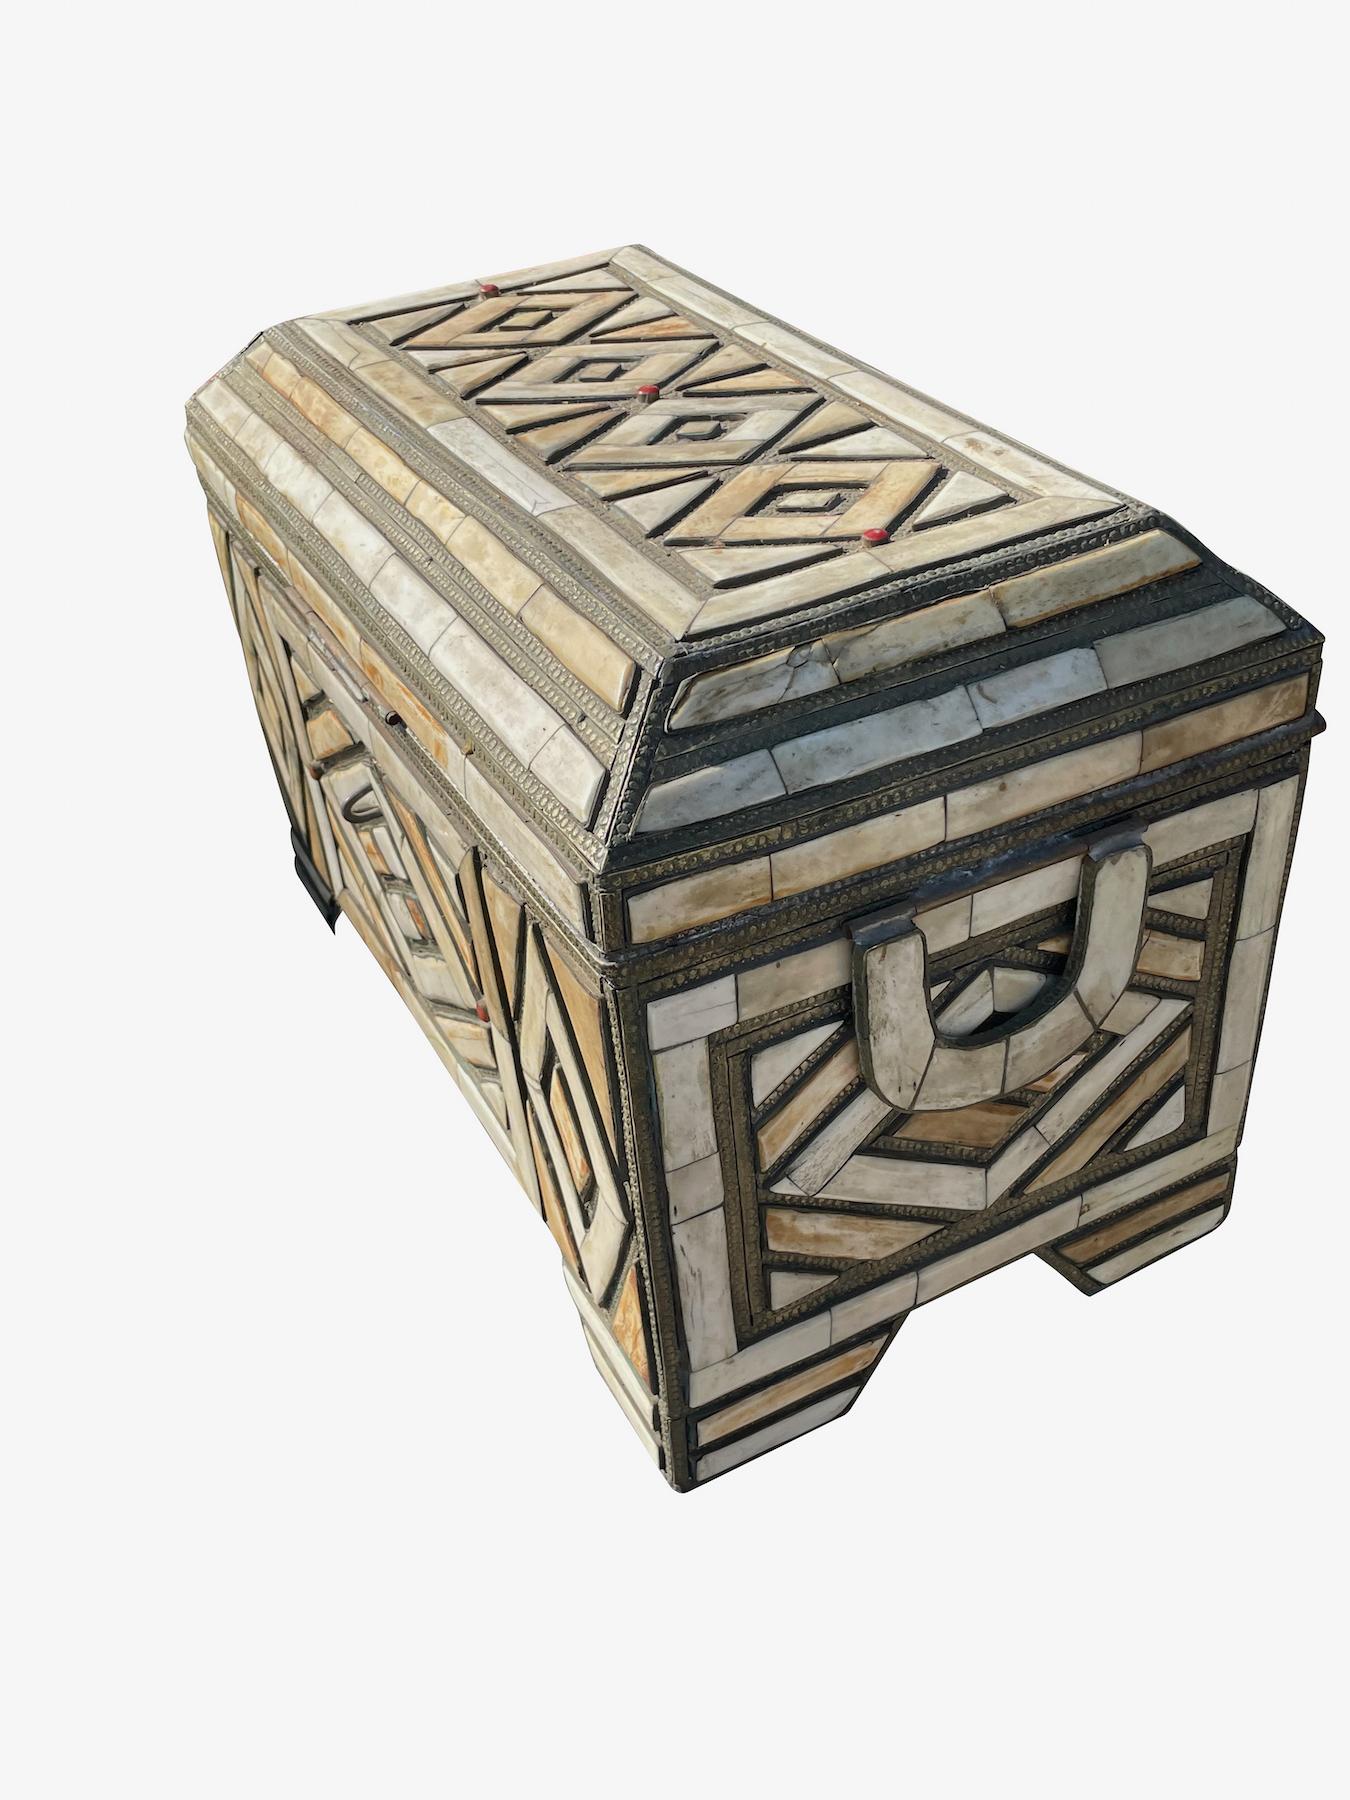 Kiste mit marokkanischen Knocheneinlagen aus dem 19.
Dekorative silberne Verzierungen.
Geometrisches Musterdesign.